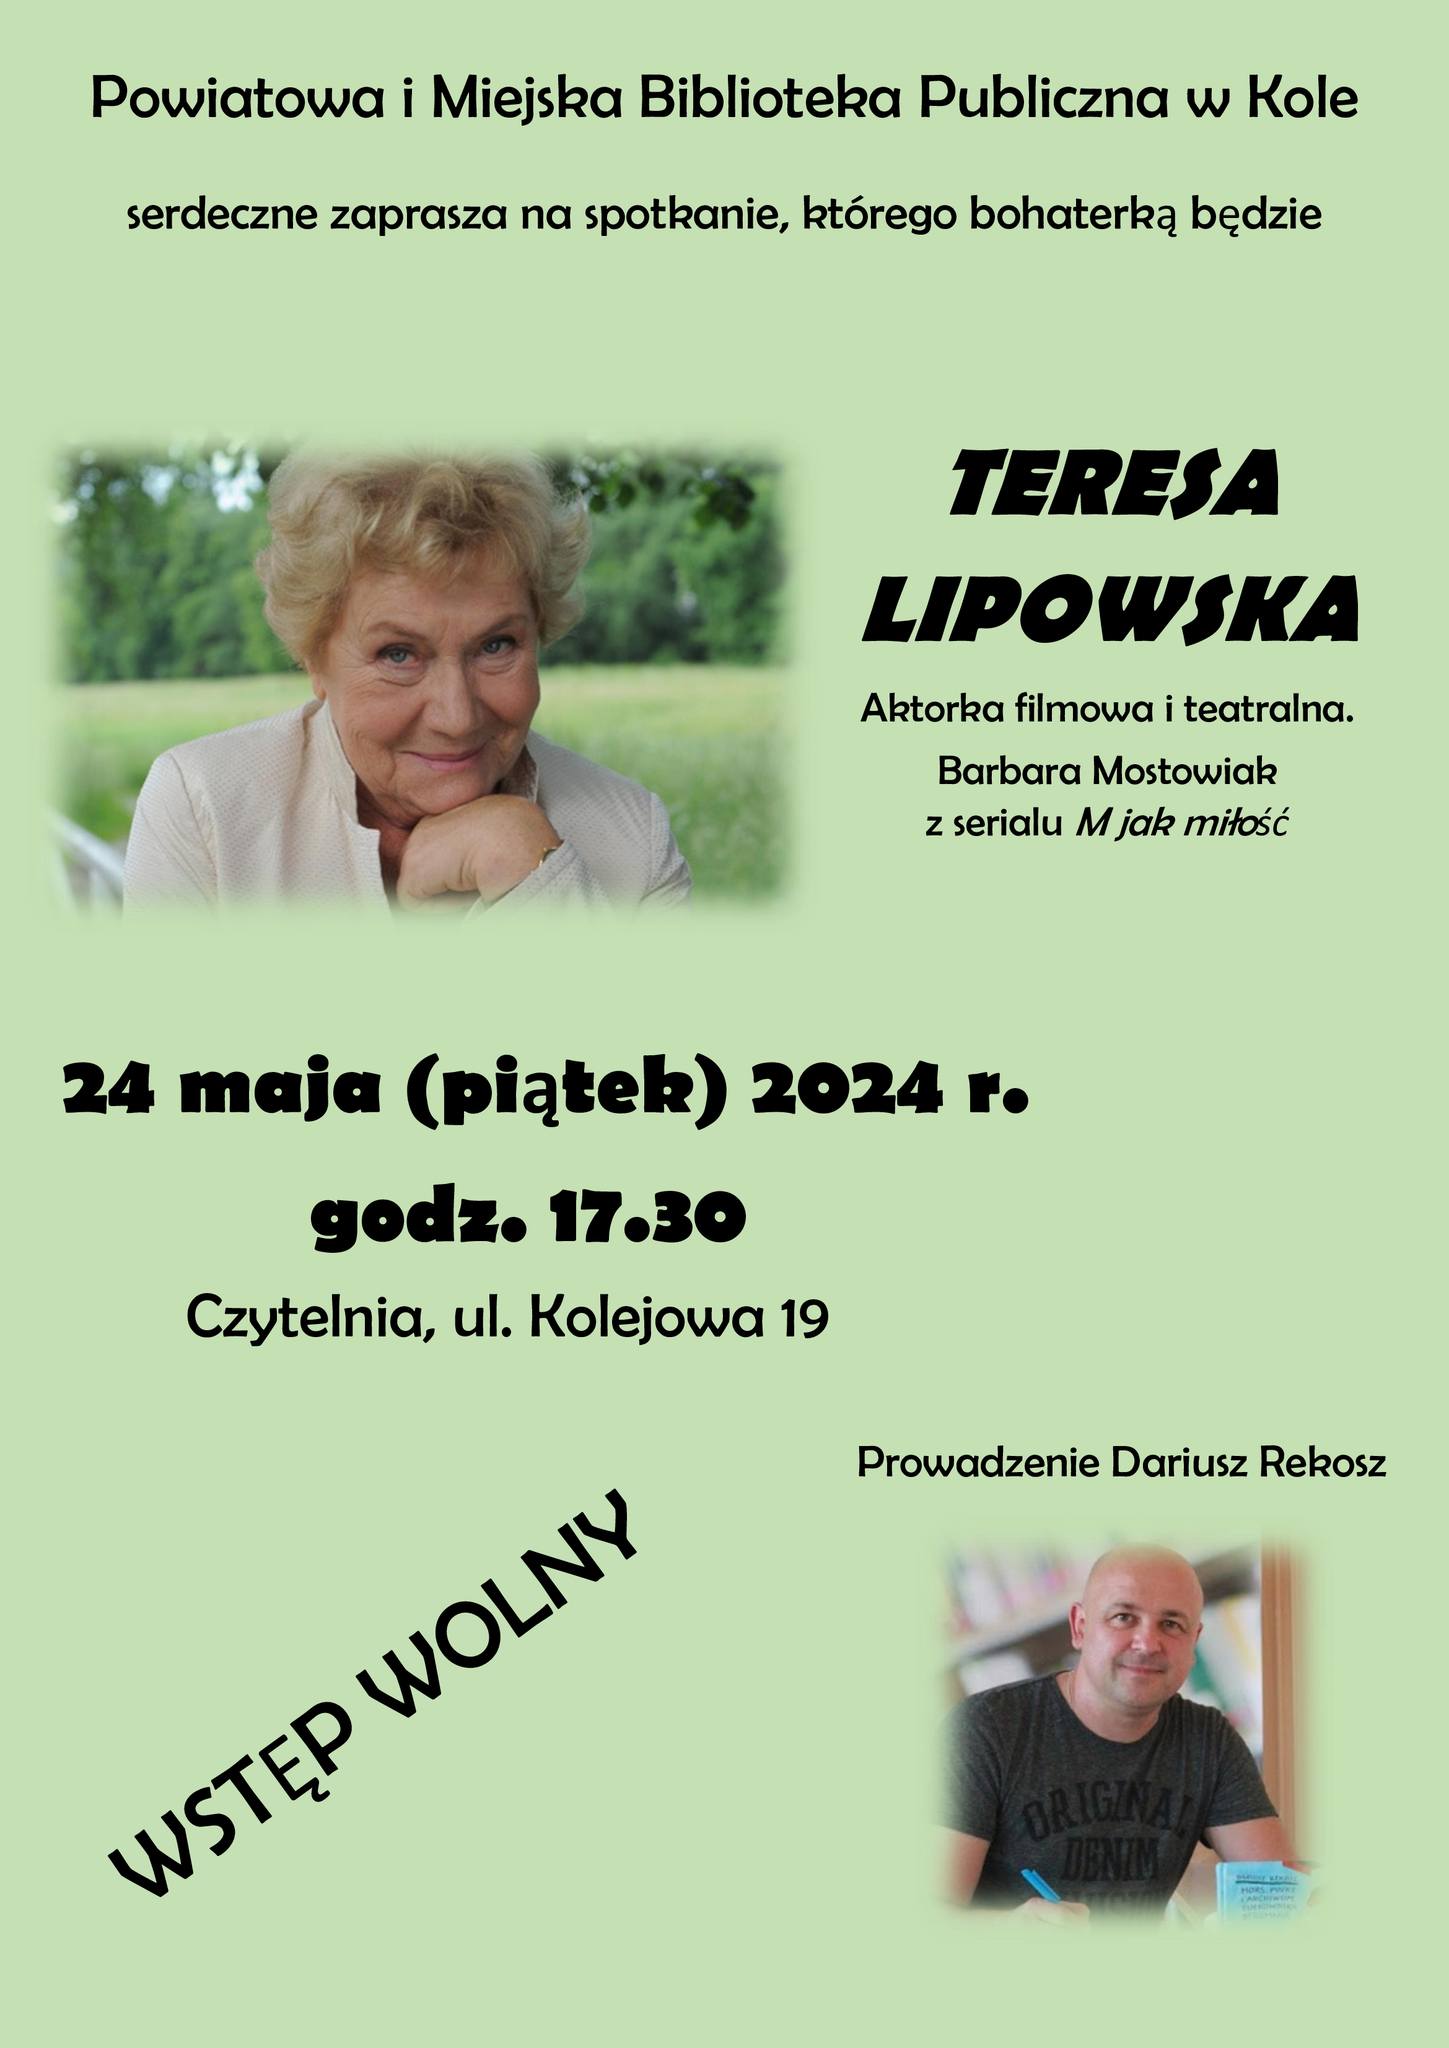 UWAGA!!! Zmienia się miejsce spotkania z aktorką filmową i teatralną Teresą Lipowską